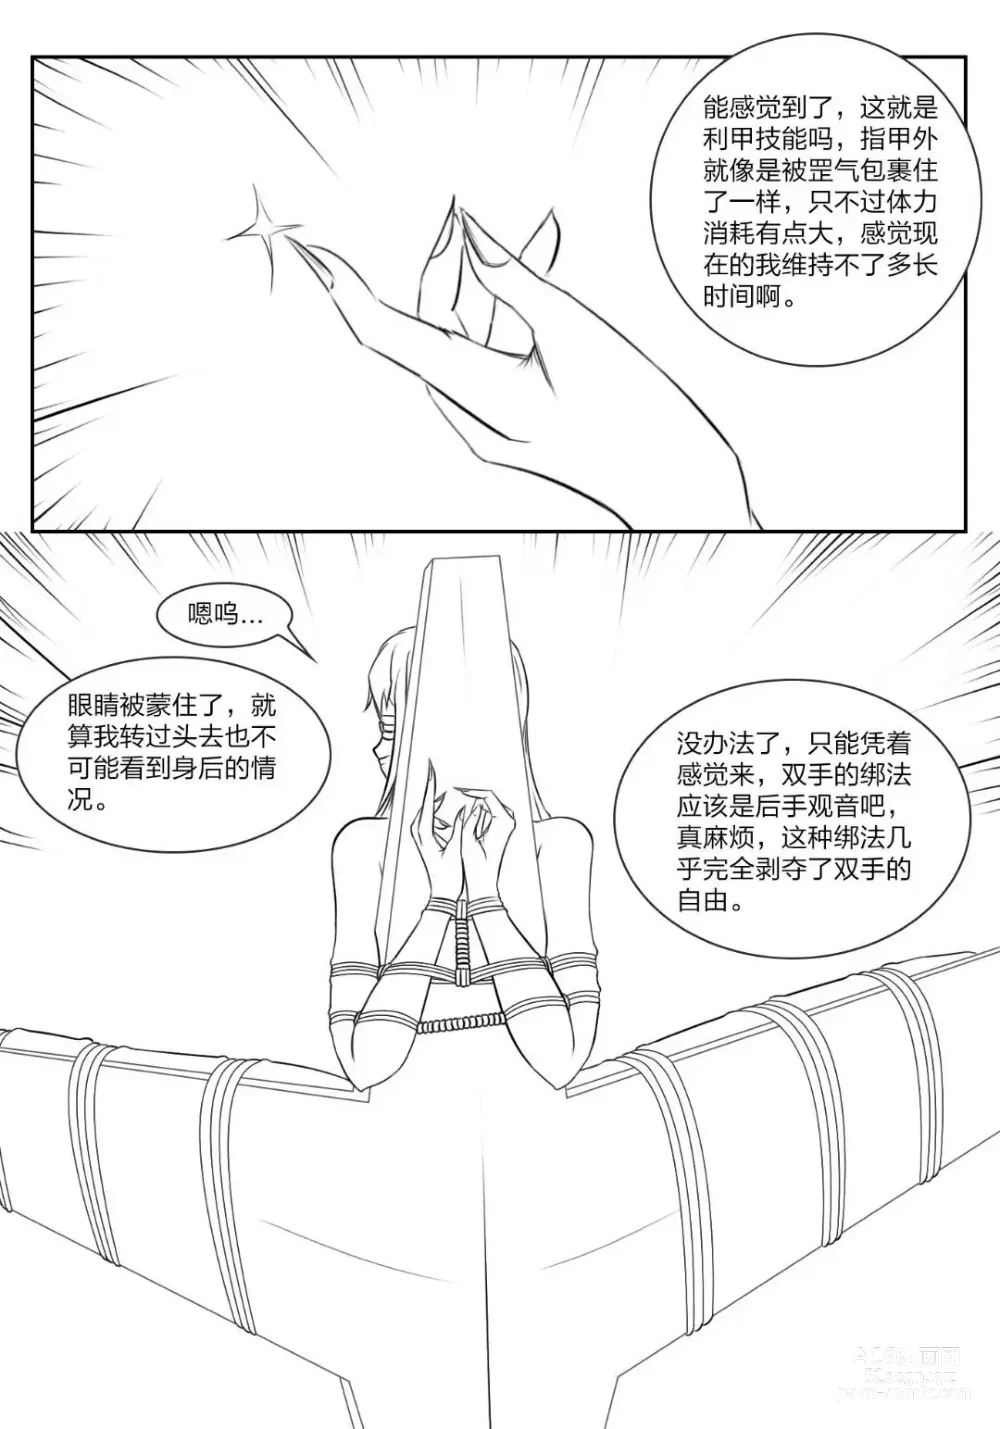 Page 9 of doujinshi 《被困游戏世界》